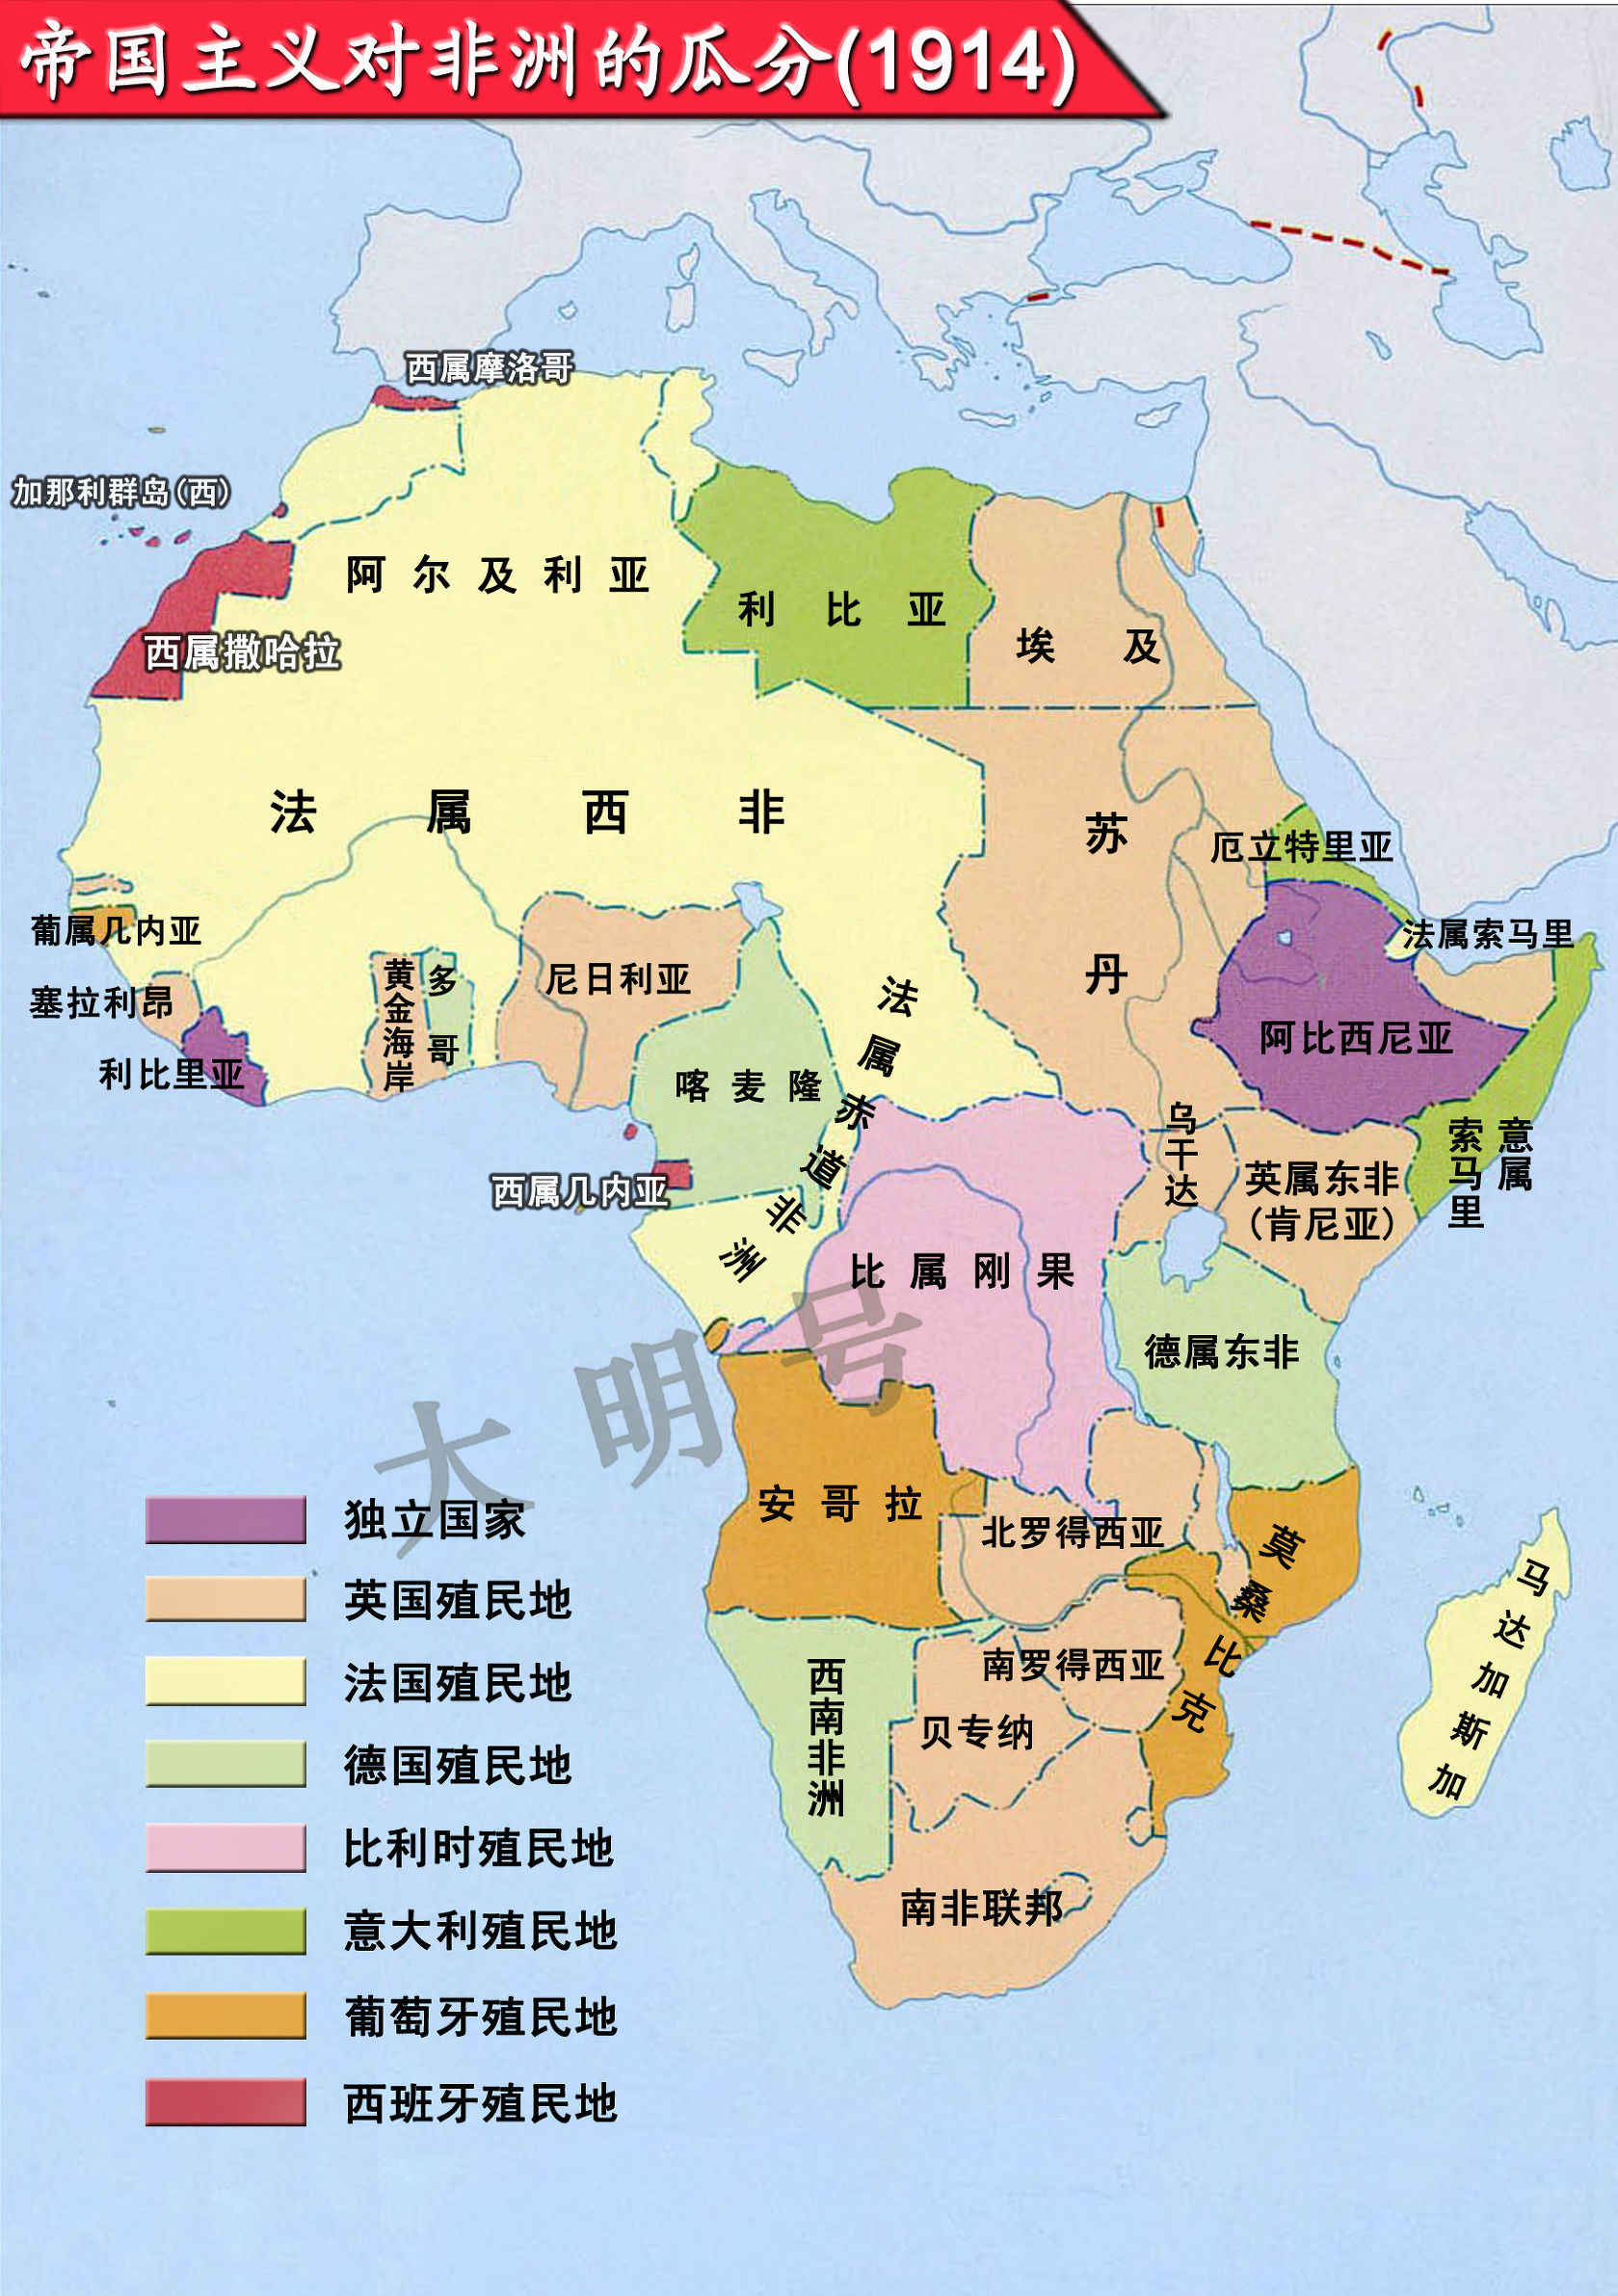 非洲唯一没有独立的地区——西撒哈拉,现今由谁实际掌管?